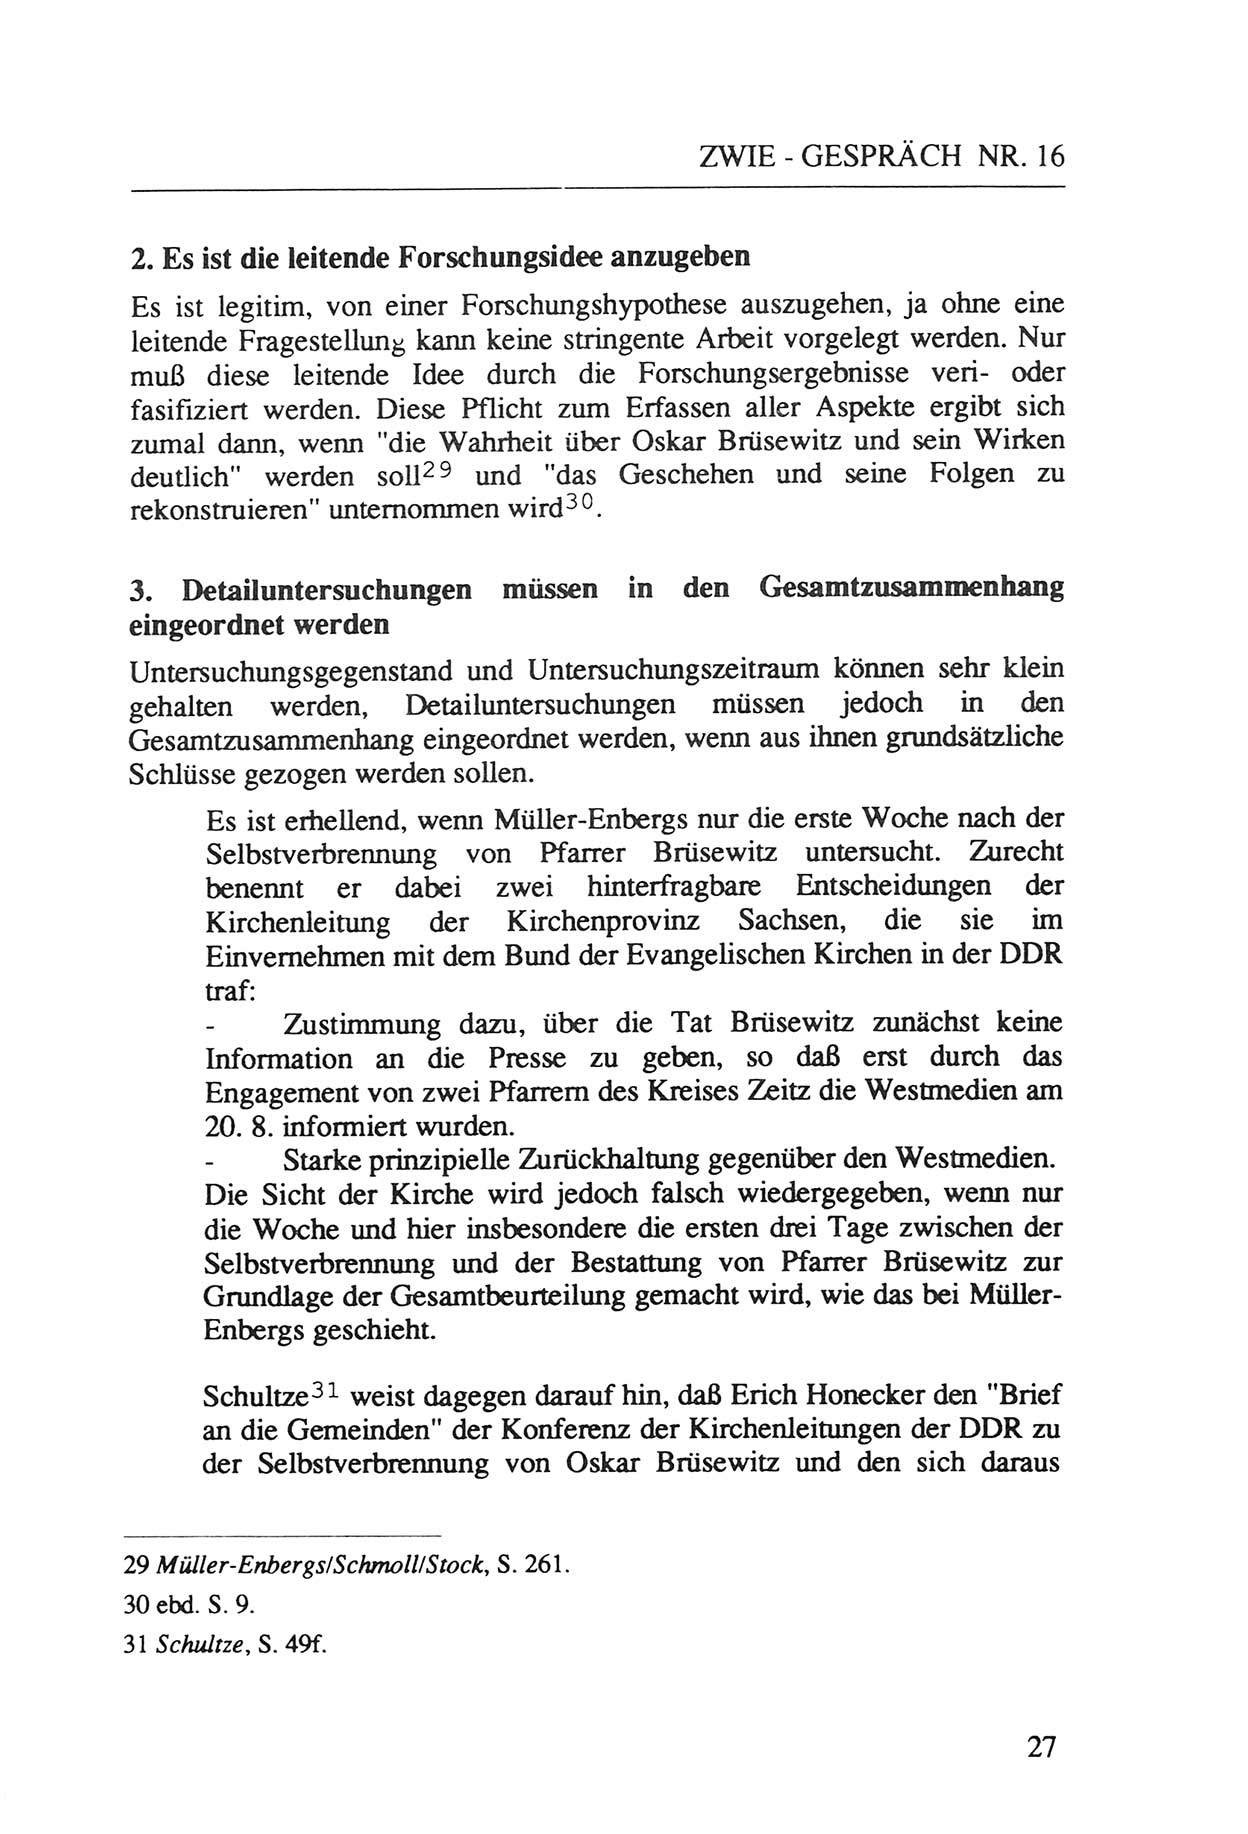 Zwie-Gespräch, Beiträge zur Aufarbeitung der Staatssicherheits-Vergangenheit [Deutsche Demokratische Republik (DDR)], Ausgabe Nr. 16, Berlin 1993, Seite 27 (Zwie-Gespr. Ausg. 16 1993, S. 27)